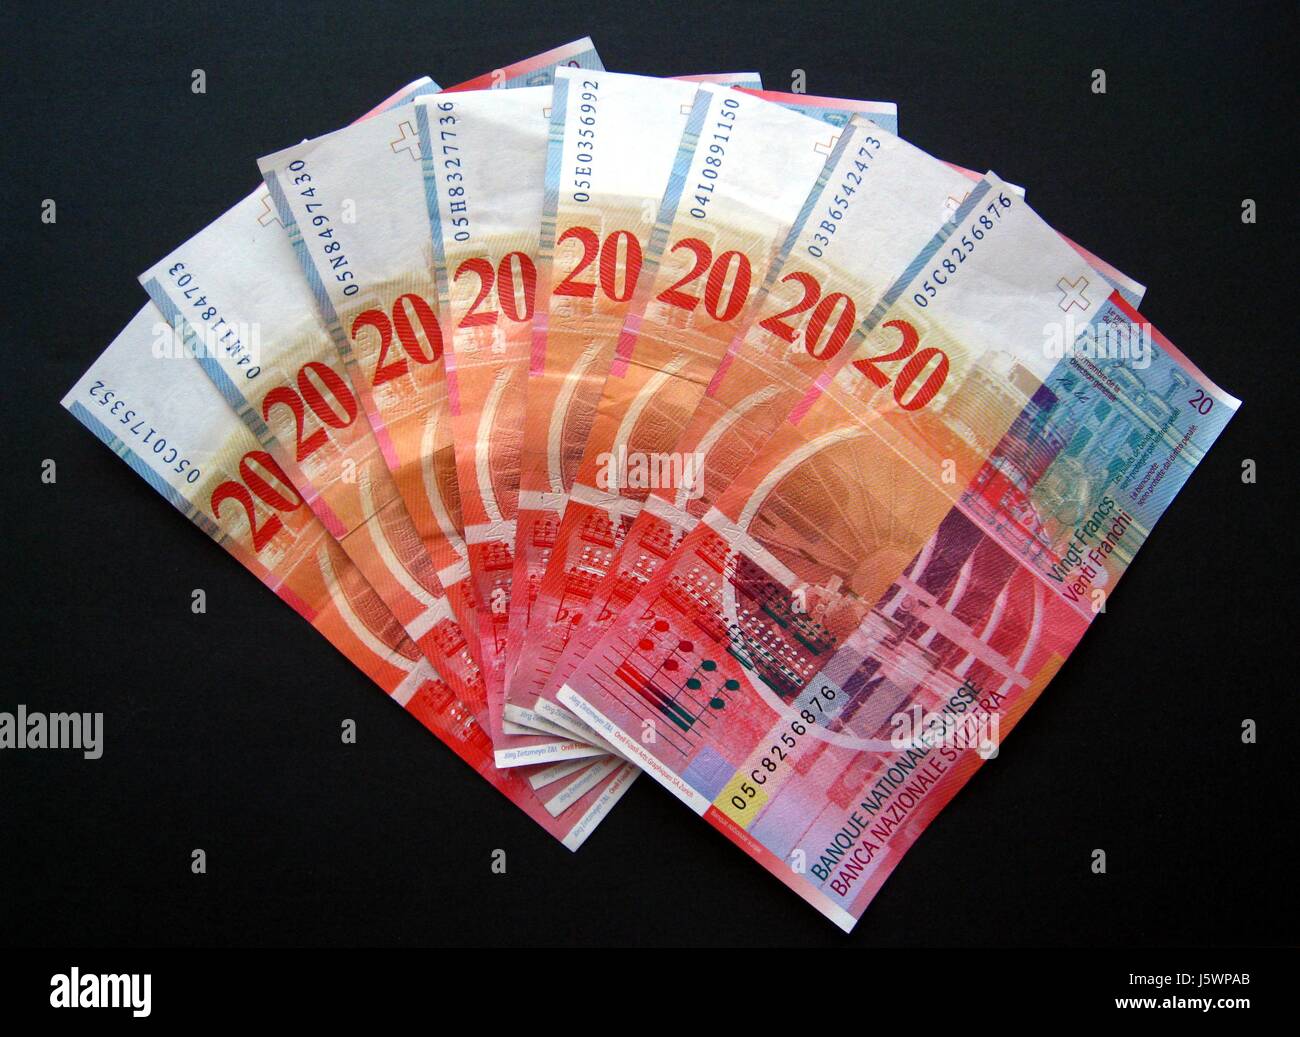 Treasury Notes Rechnungen Geld Finanzen Franken Währung der Schweiz sparen Notizen fan Stockfoto